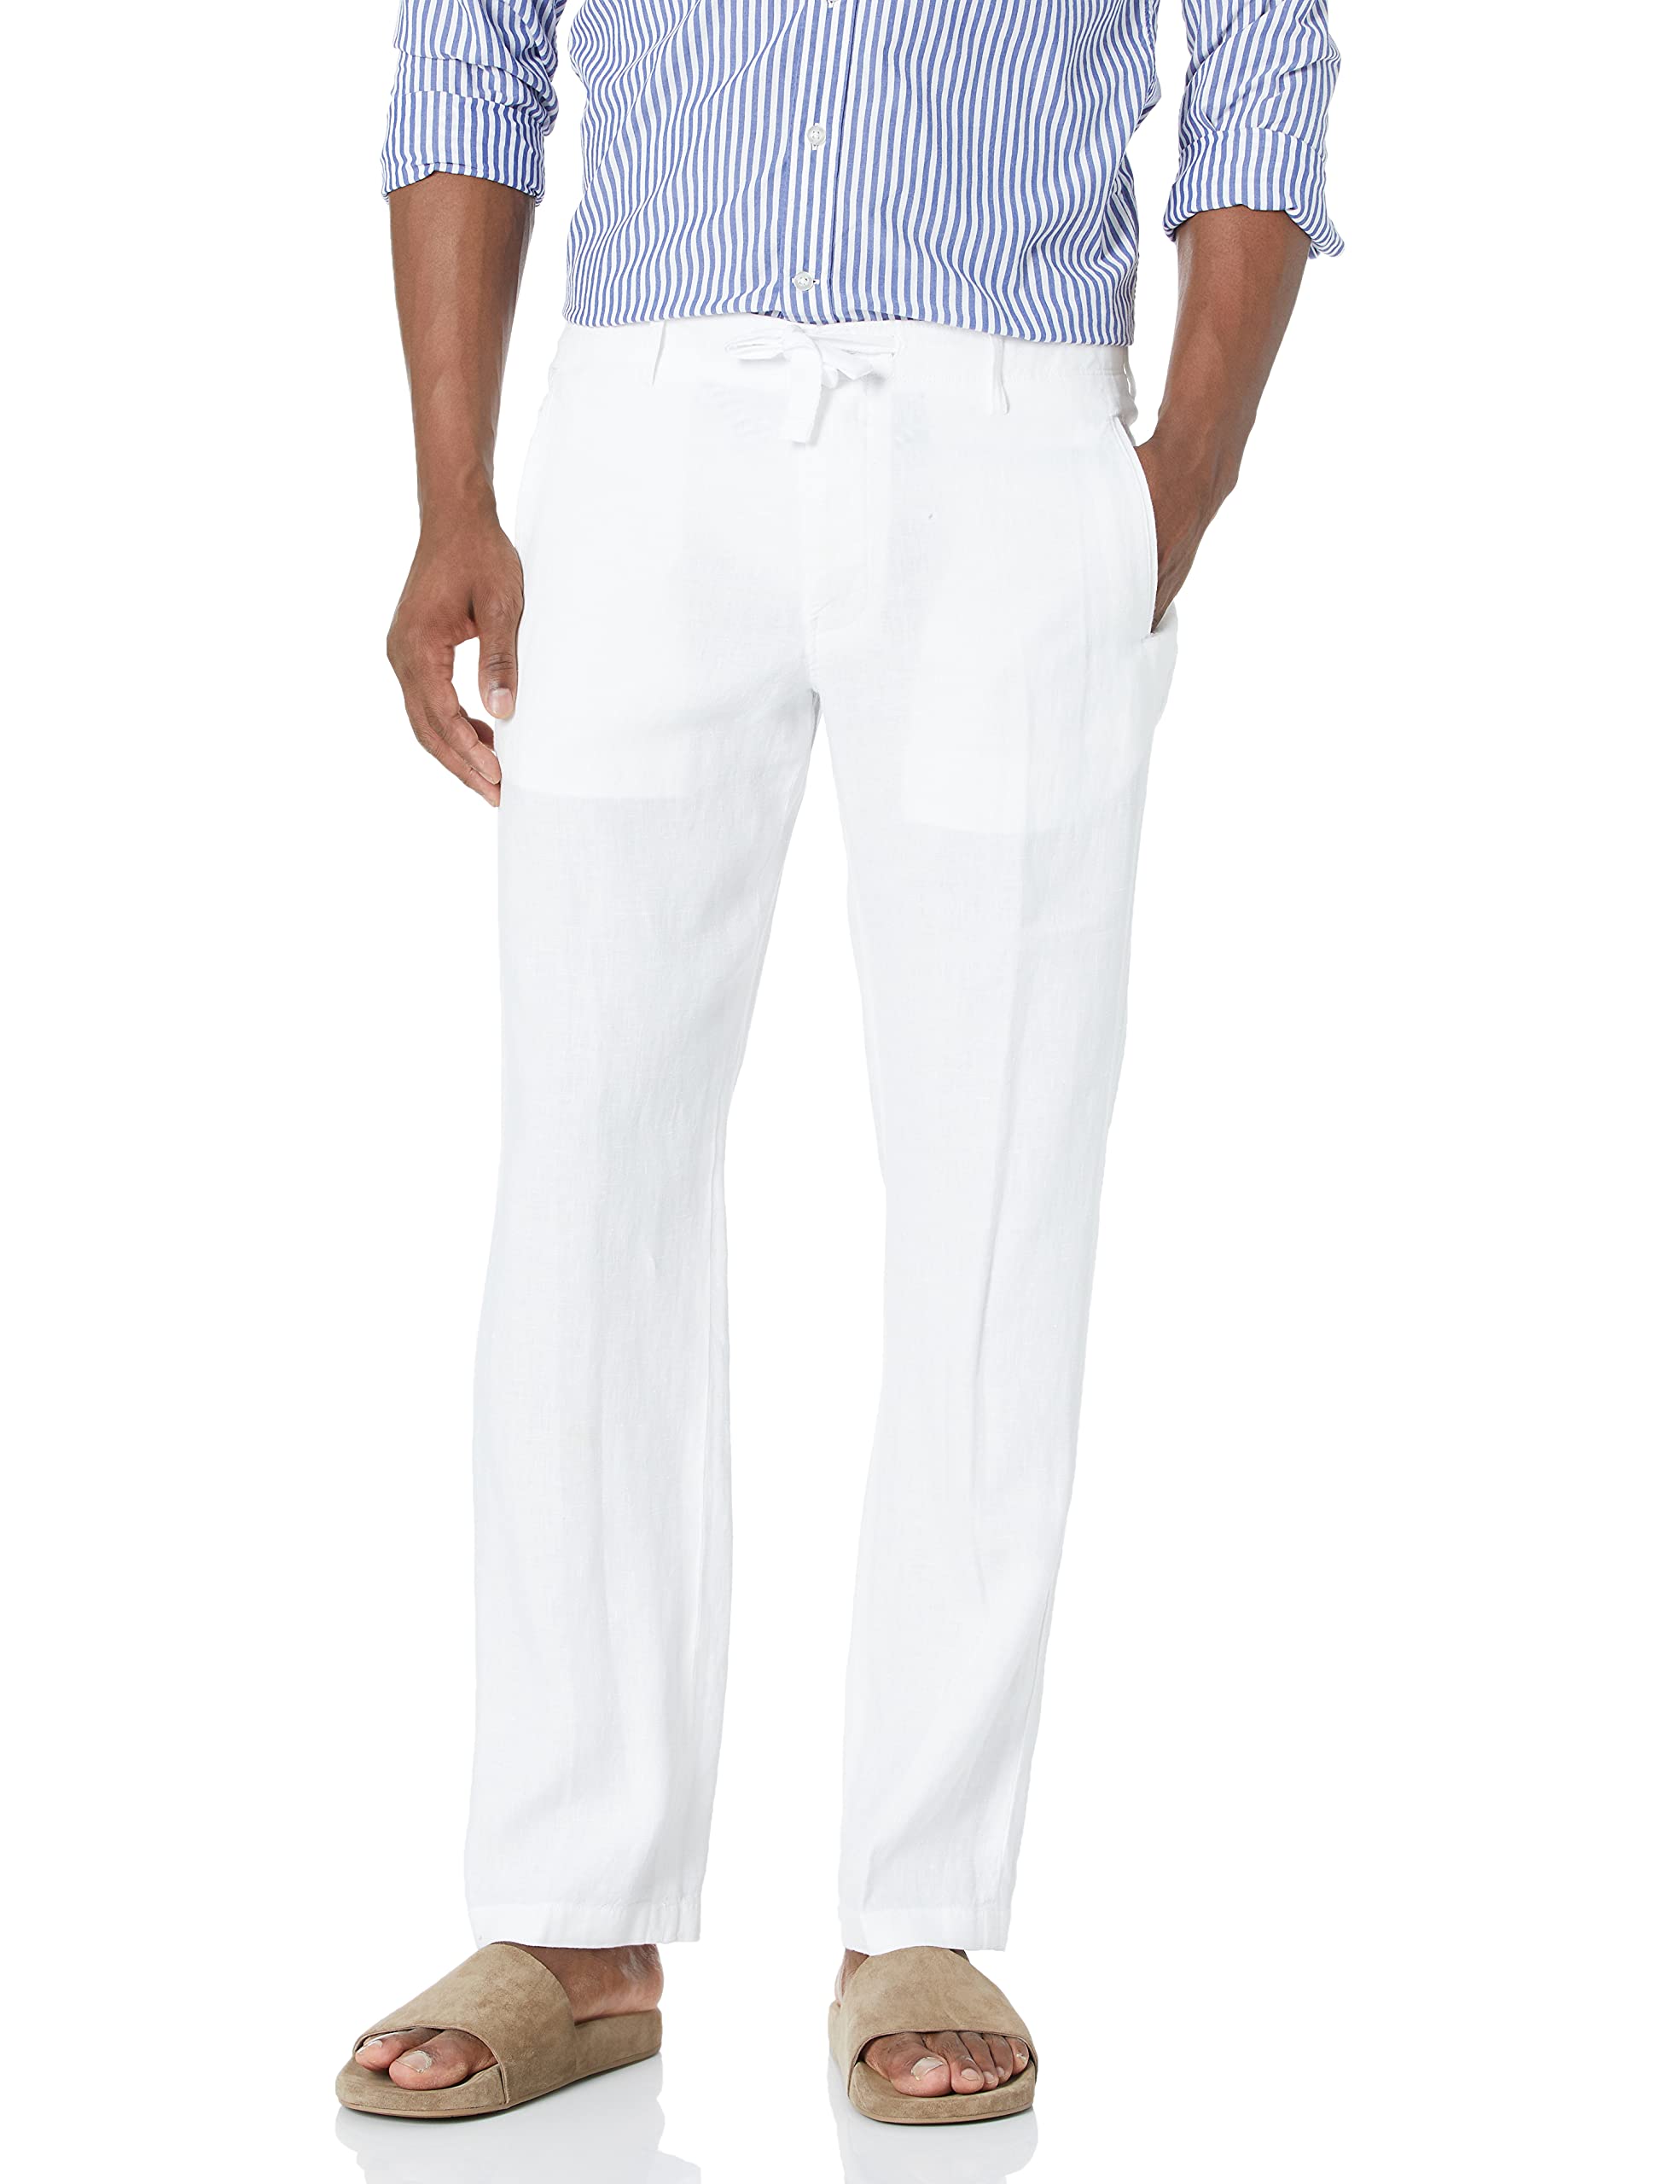 Perry Ellis 100% Linen Drawstring Casual Pants for Men, Regular Fit, Lightweight (Waist Size 29-54 Big & Tall)